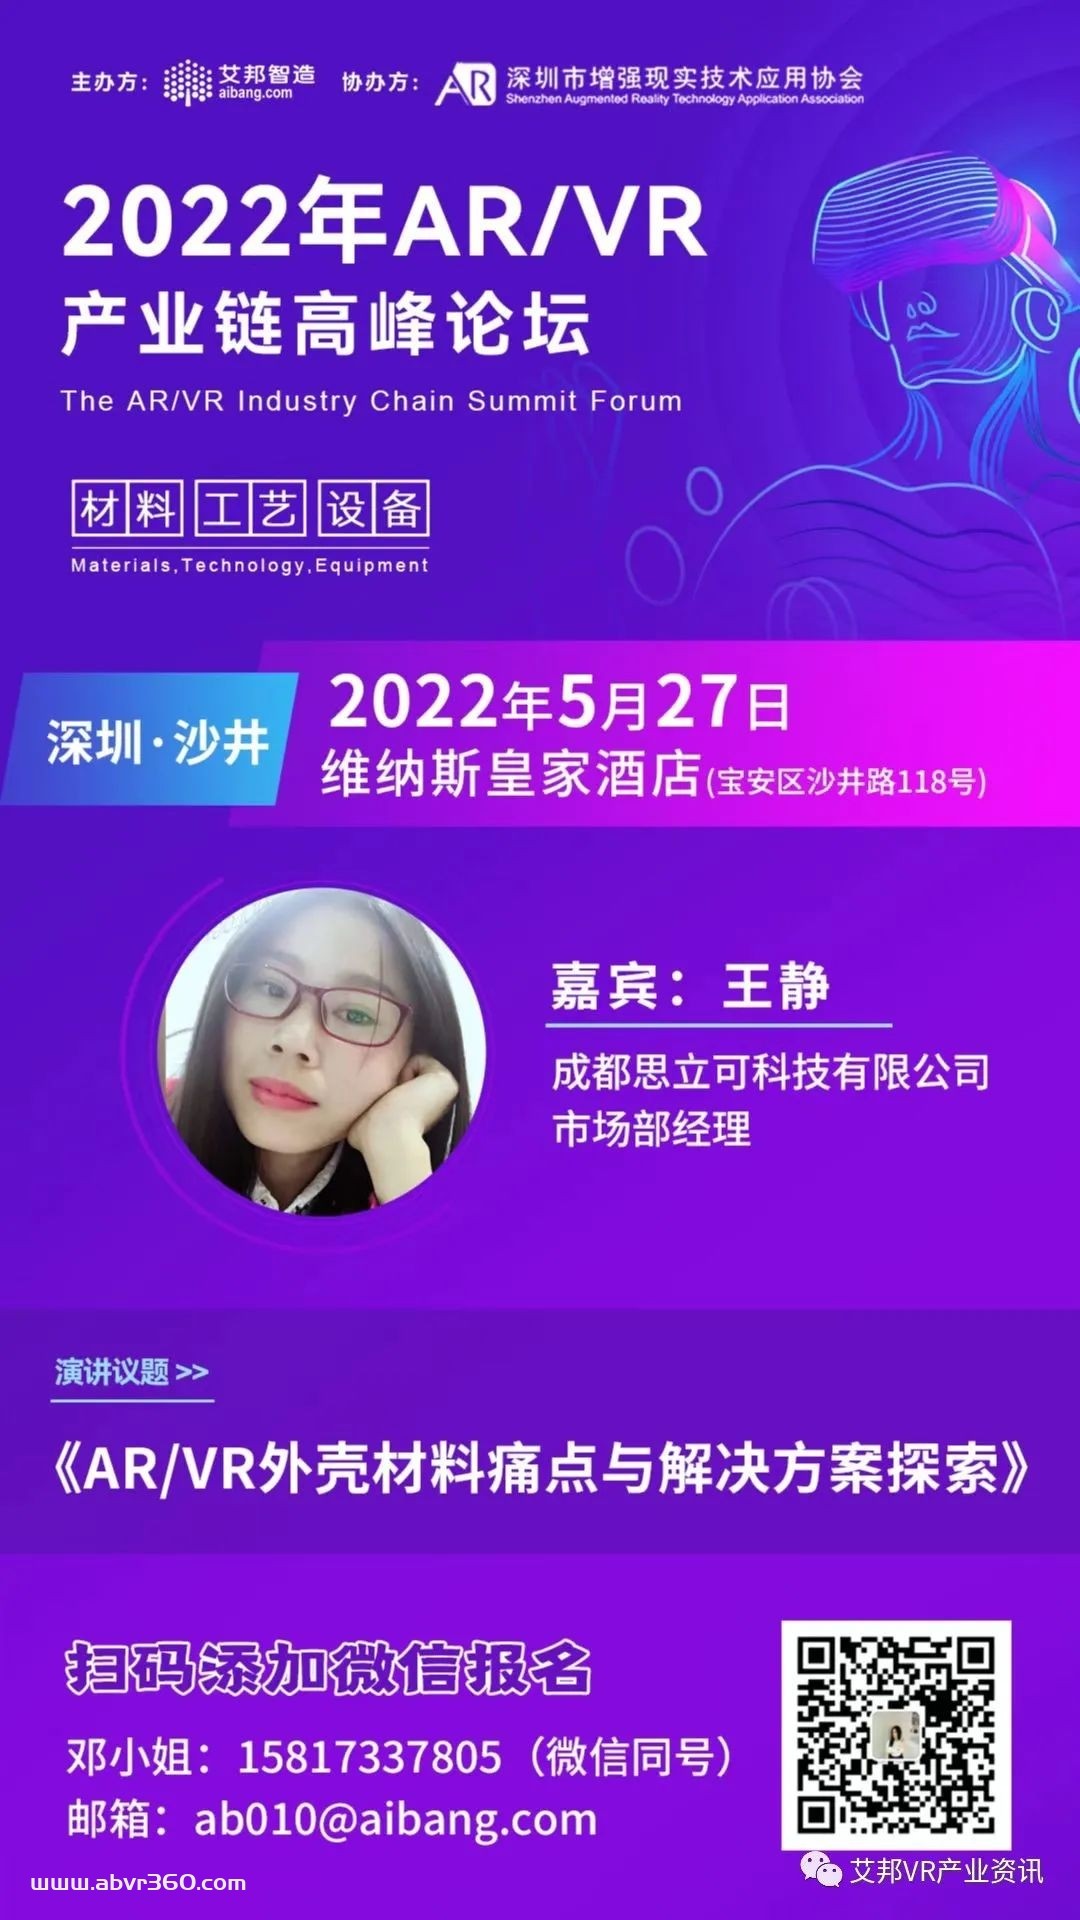 思立可将参与5月27日深圳AR/VR高峰论坛